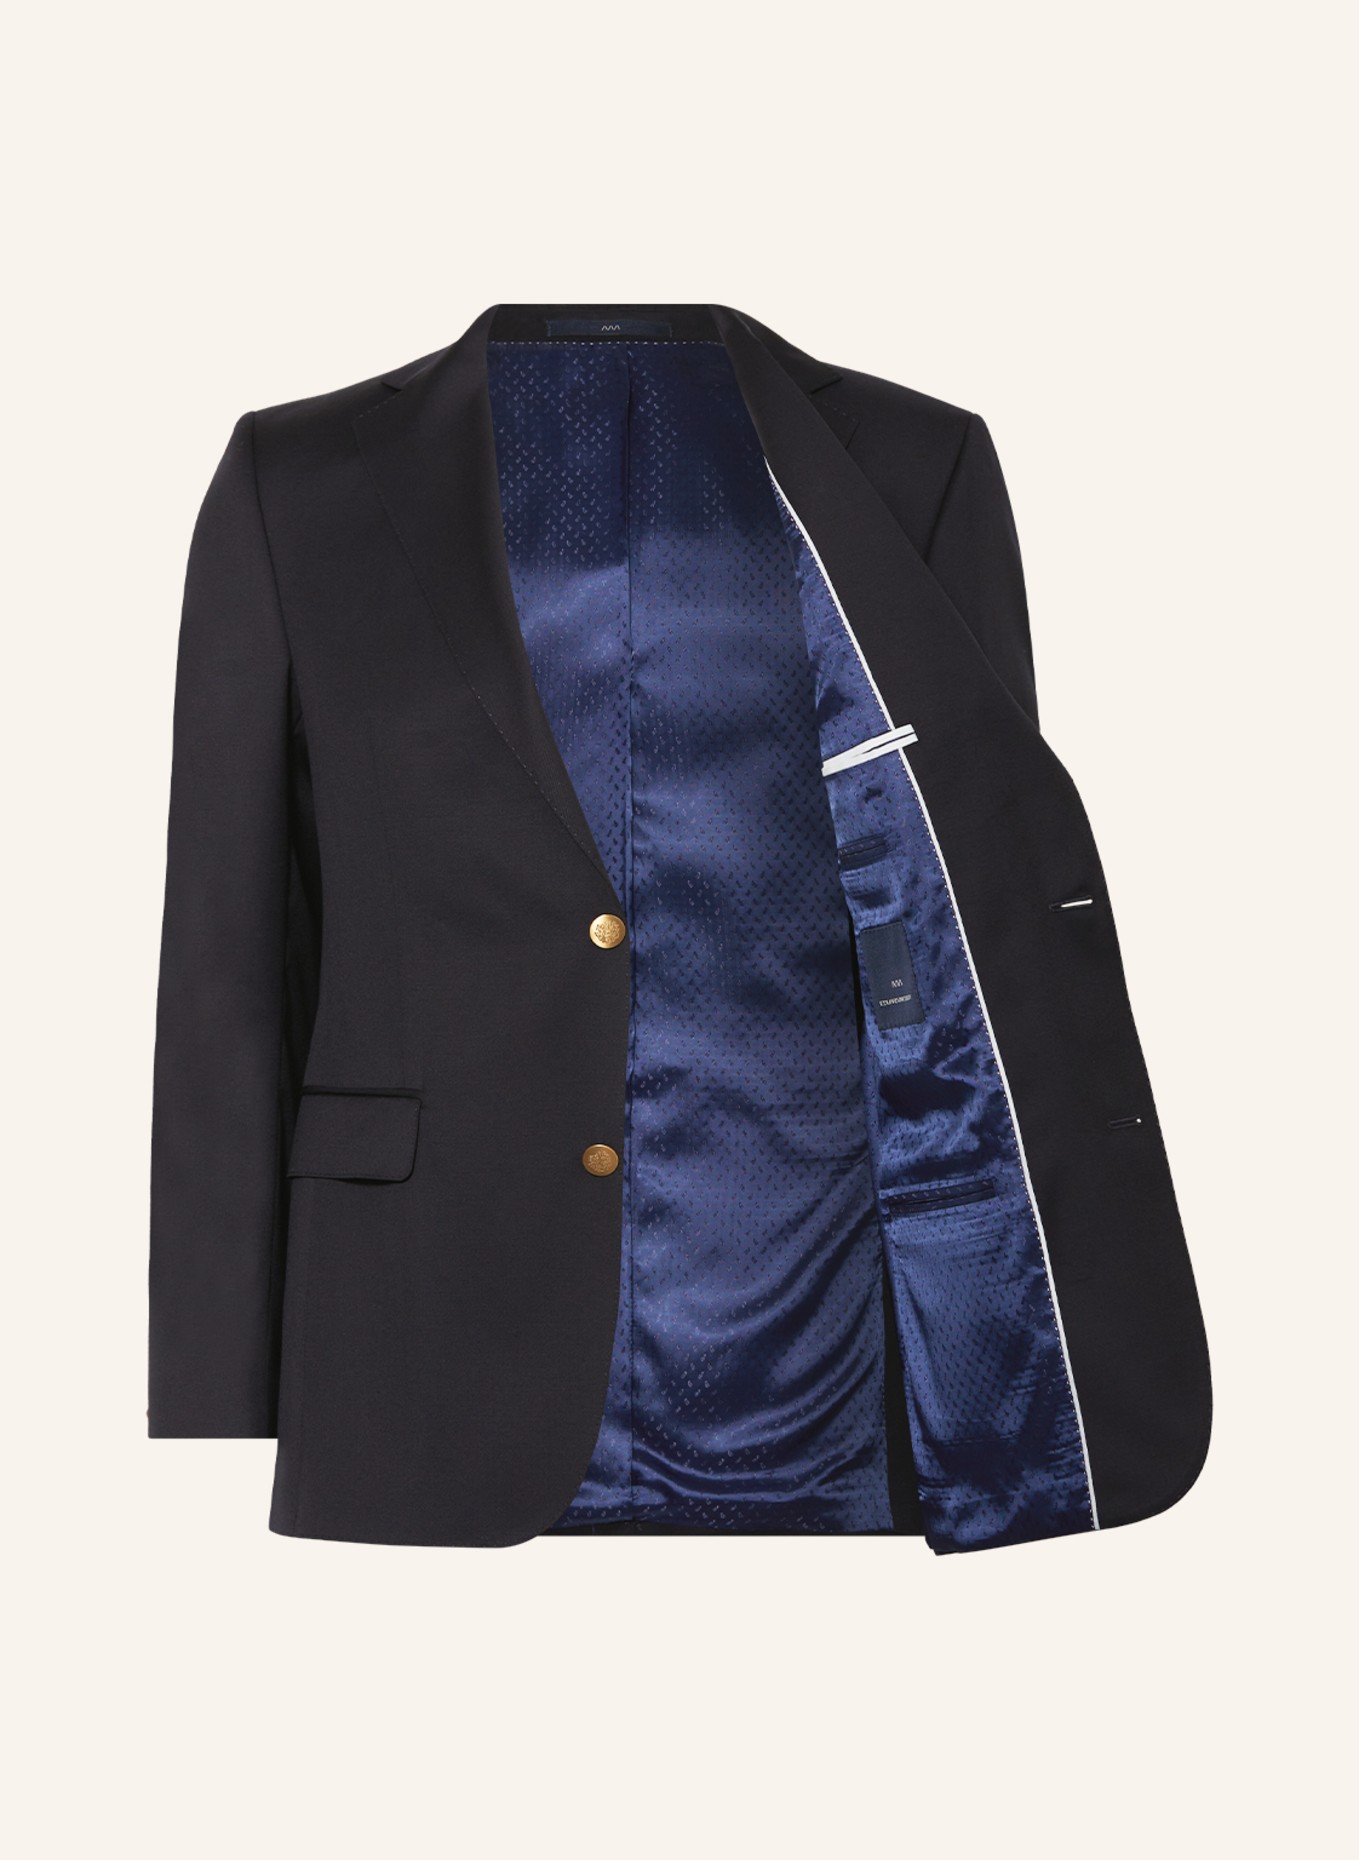 EDUARD DRESSLER Tailored jacket comfort fit, Color: DARK BLUE (Image 4)